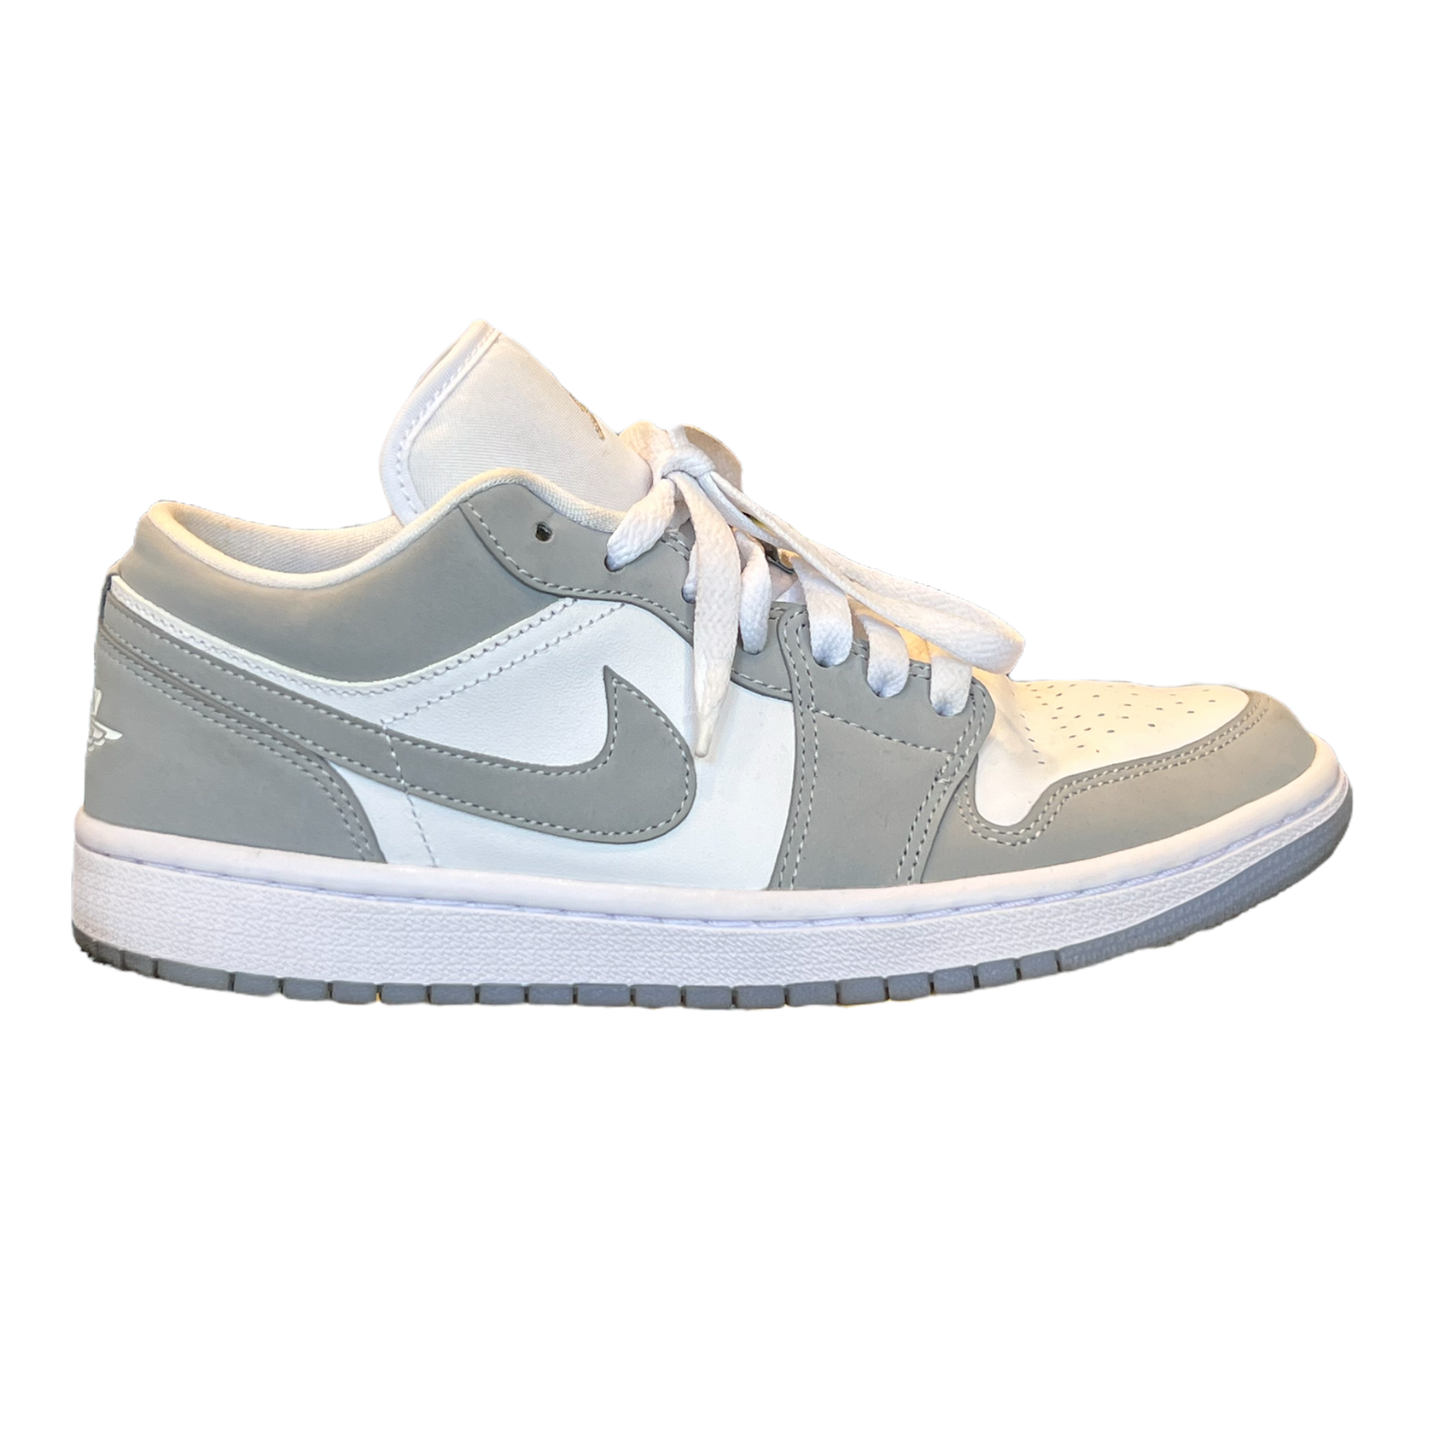 Jordan 1 Low - "Grey/White" - Size 8.5